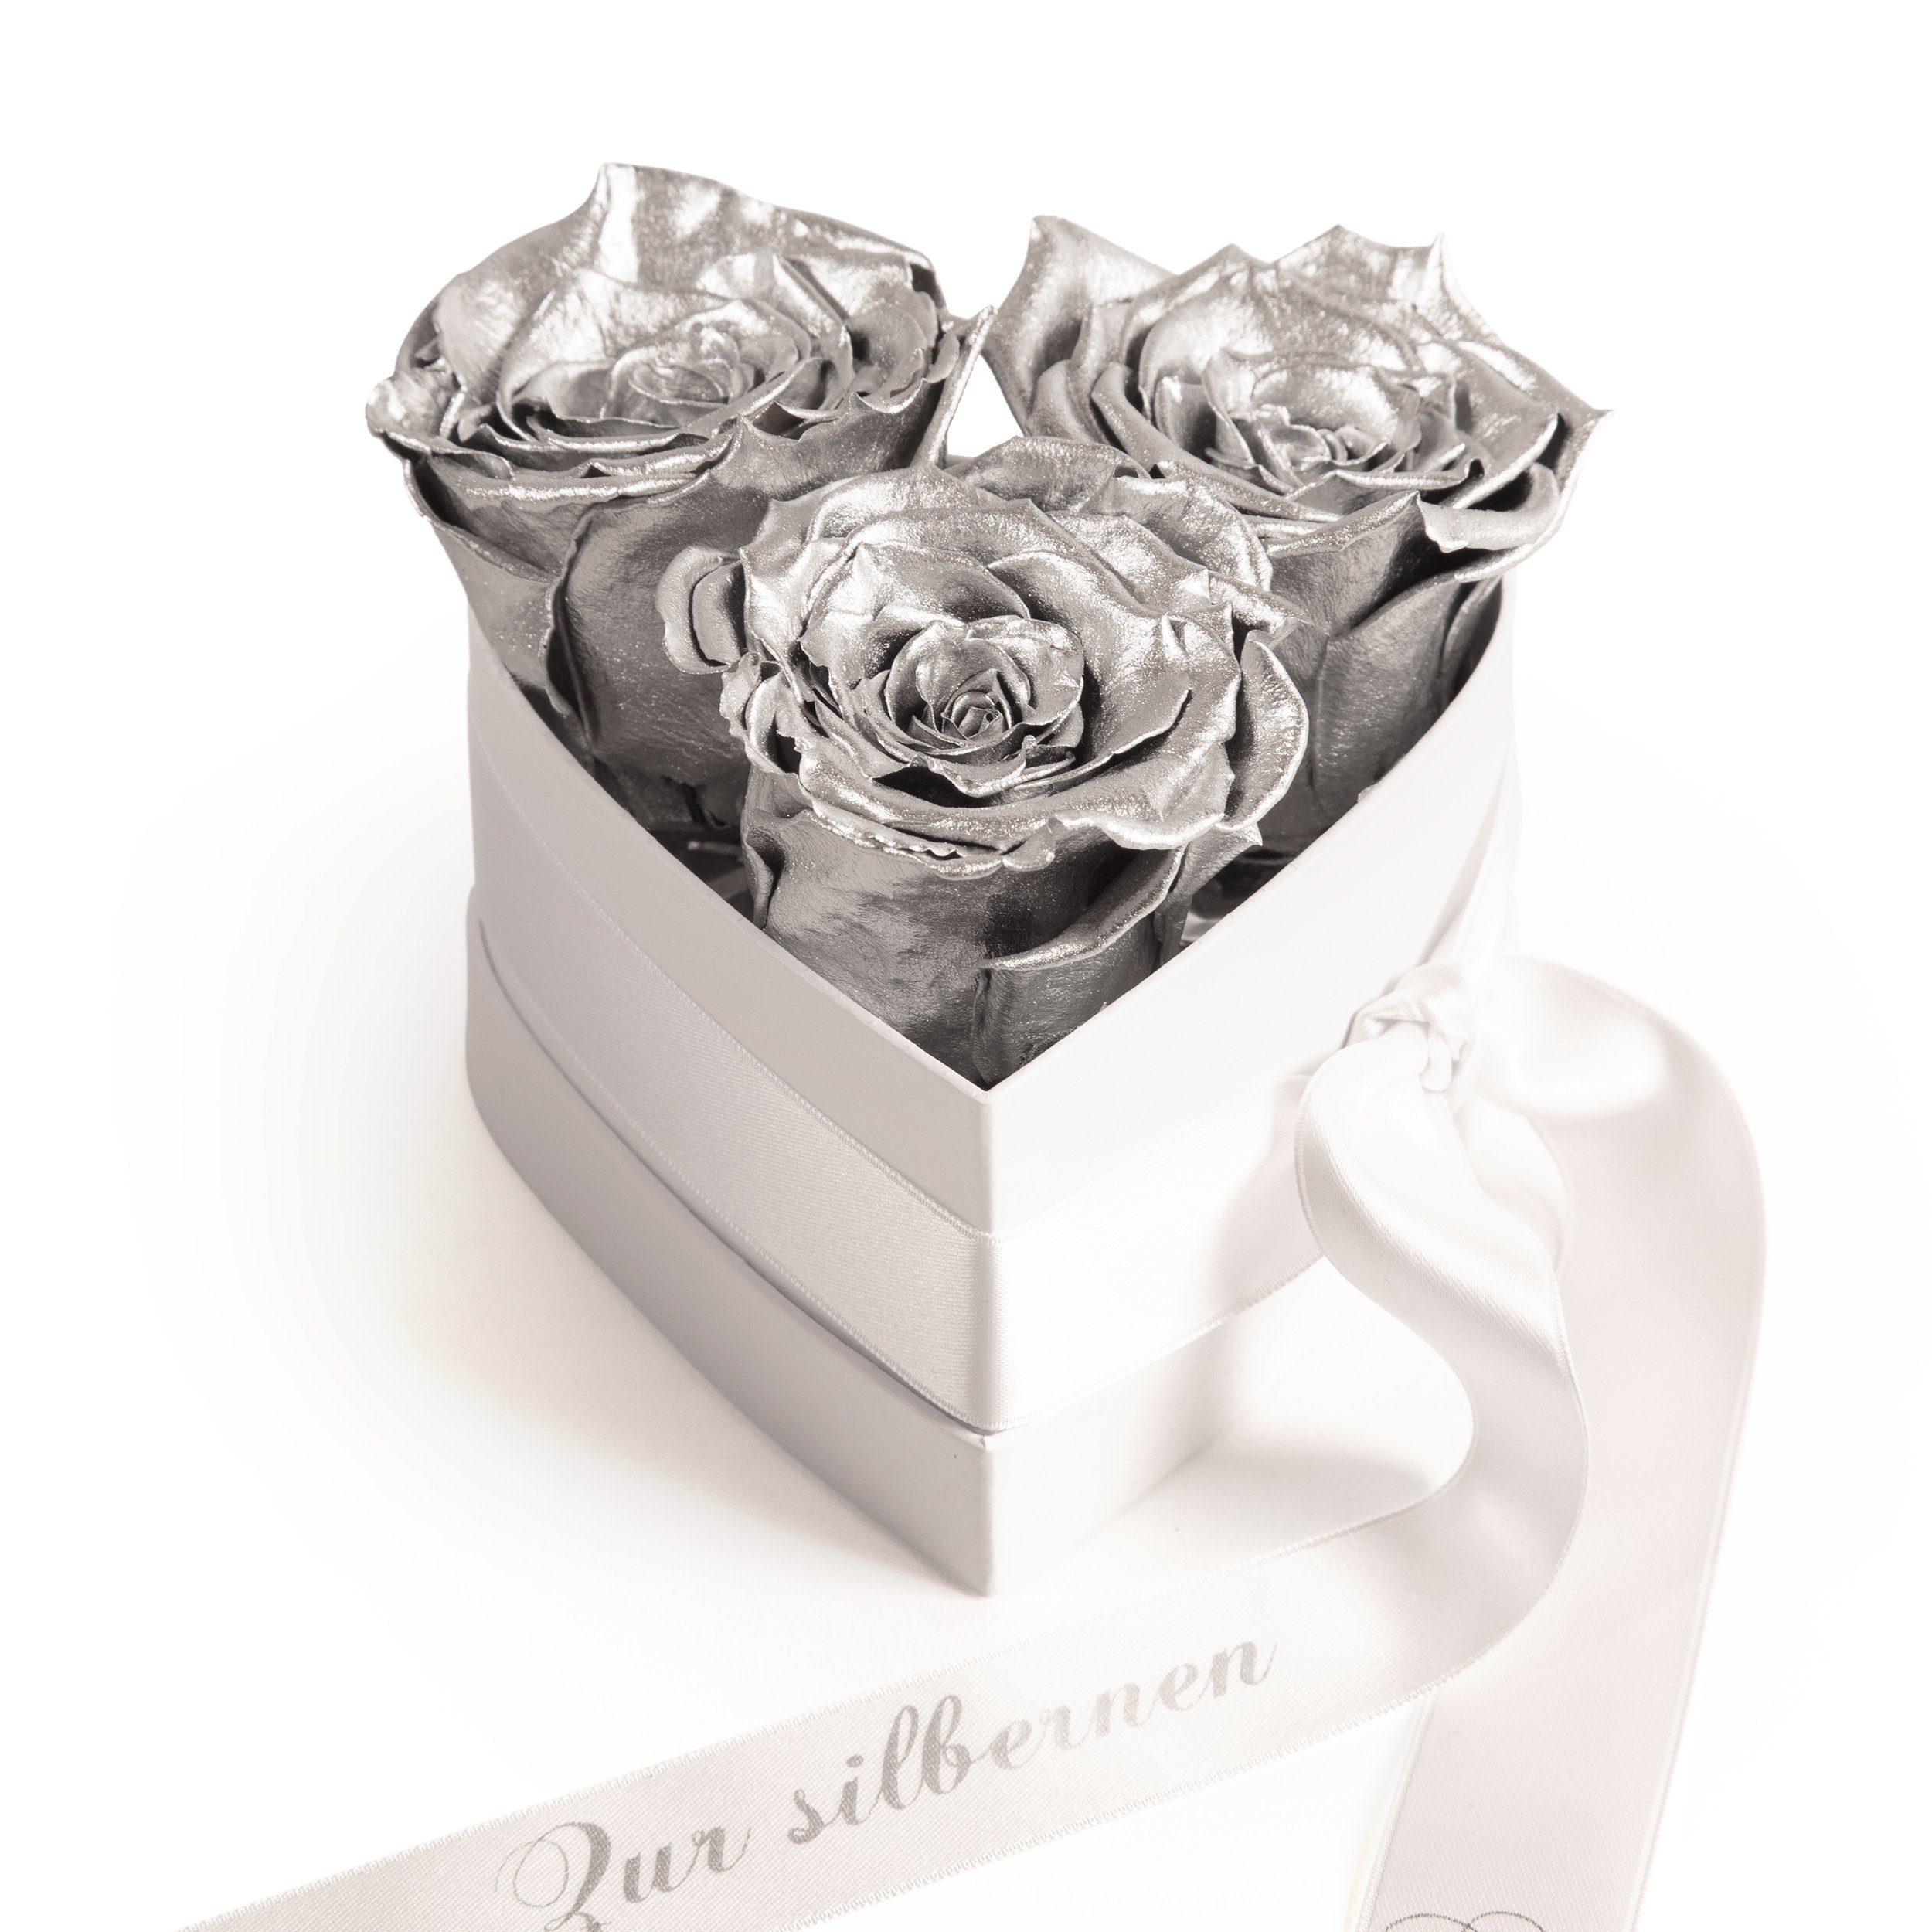 Silberhochzeit haltbare Kunstpflanze Blumen Geschenk Jubiläum Infinity Rosenbox Jahre 25 SCHULZ Heidelberg, 10 Rosen, cm, Höhe ROSEMARIE